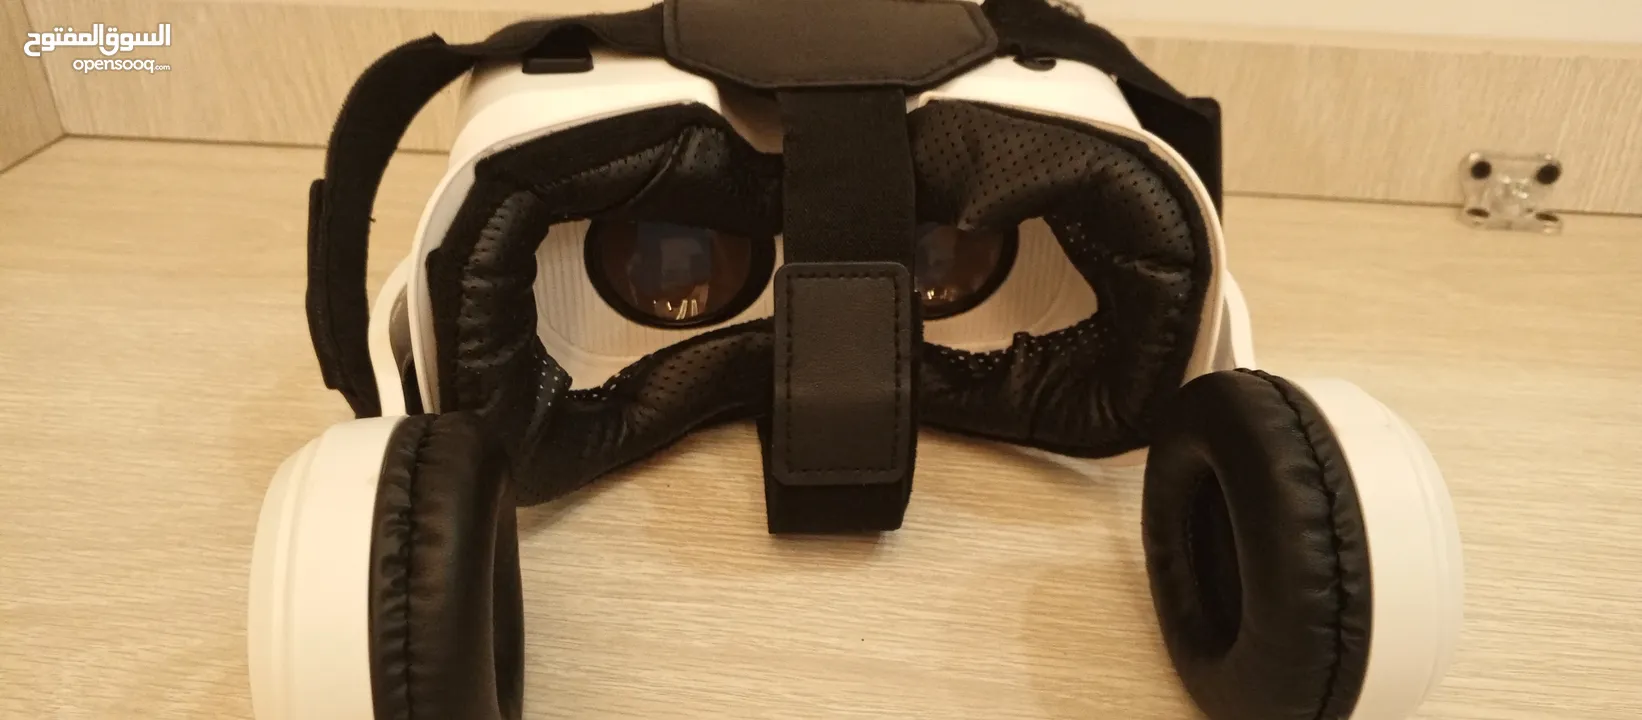 نظارة 360-VRفي حالة ممتازة